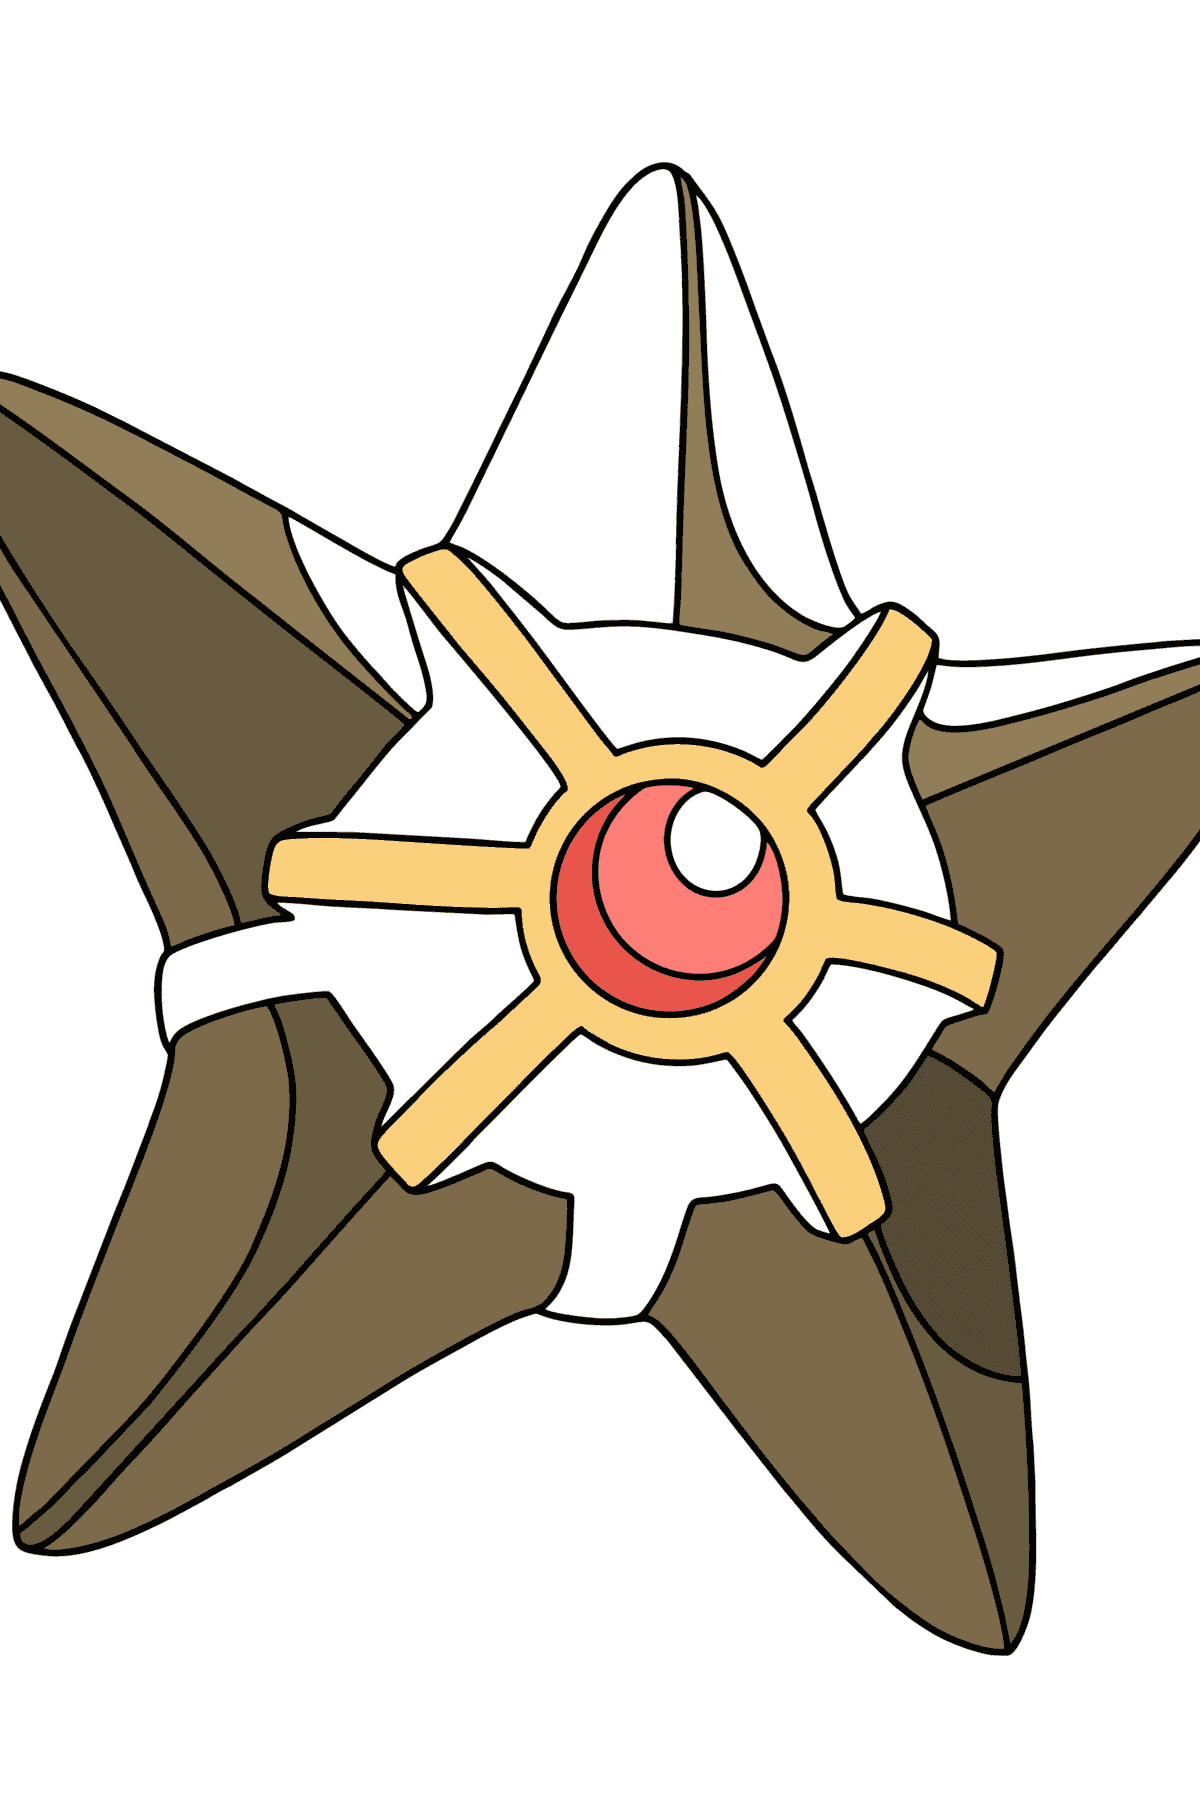 Kleurplaat Pokémon XY Staryu - kleurplaten voor kinderen